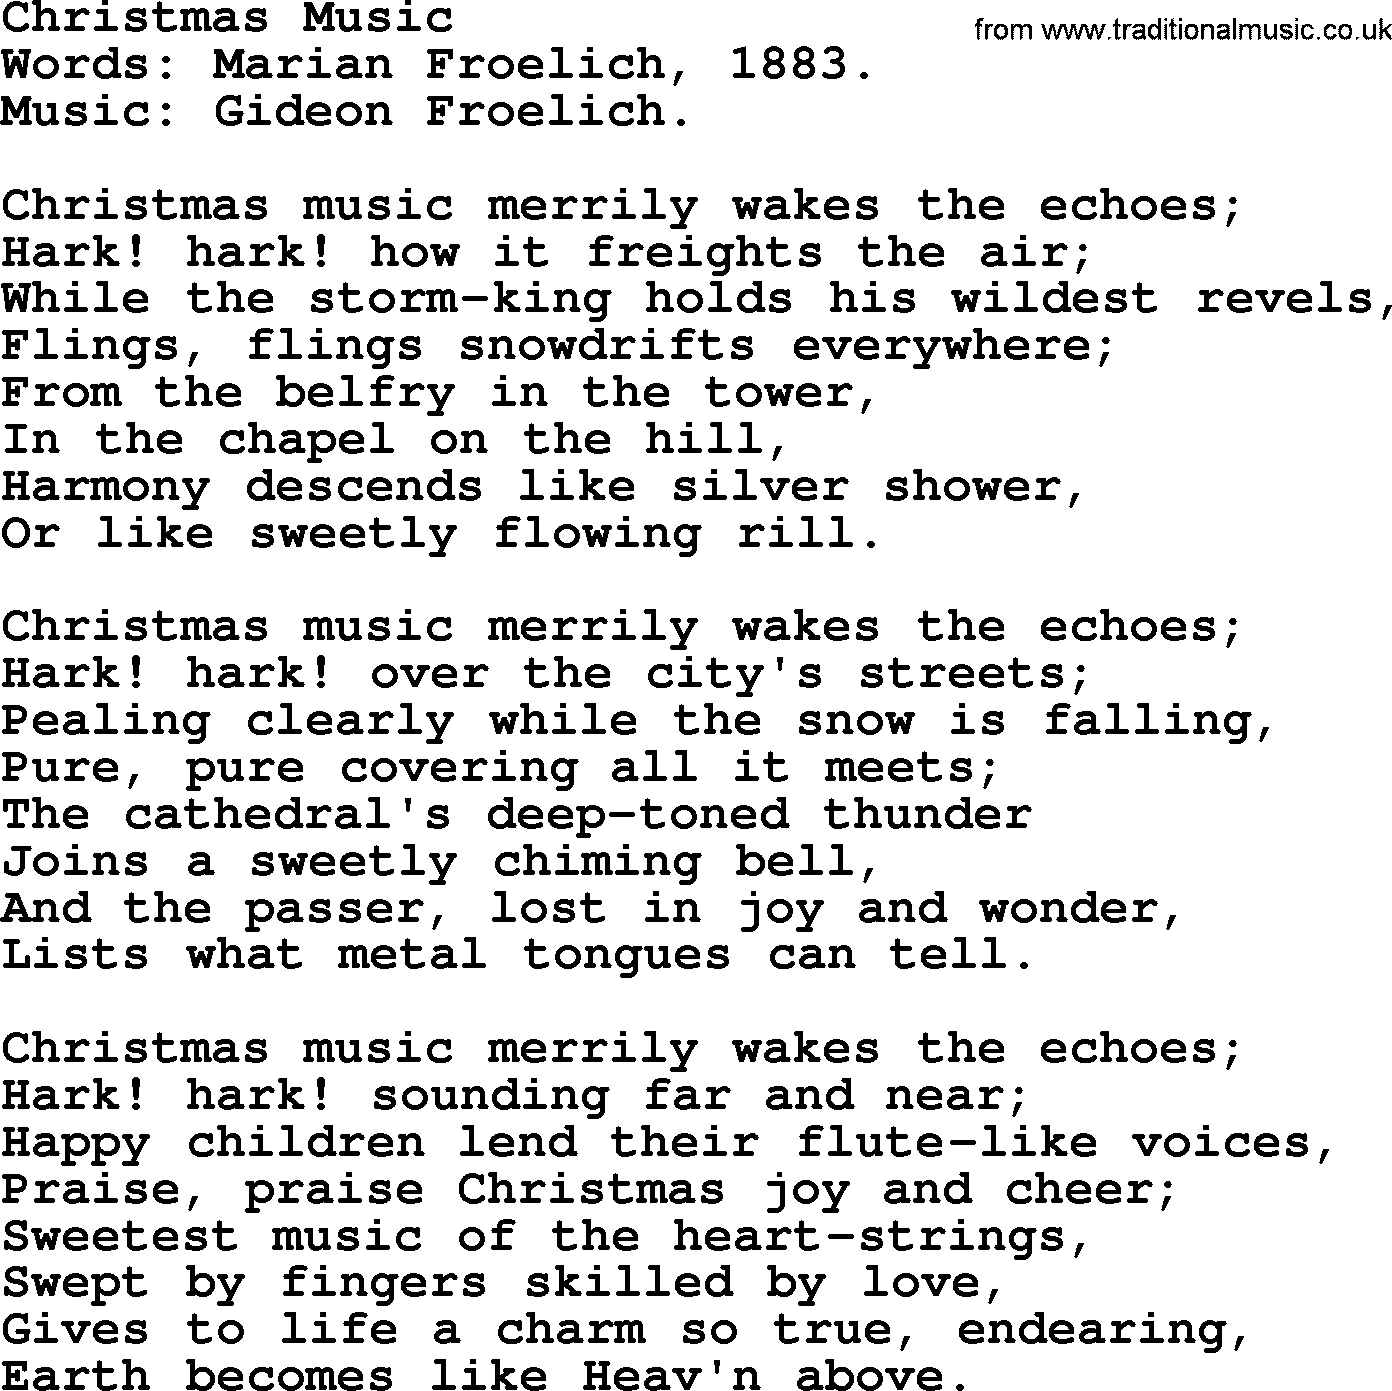 Christmas Hymns, Carols and Songs, title: Christmas Music, lyrics with PDF